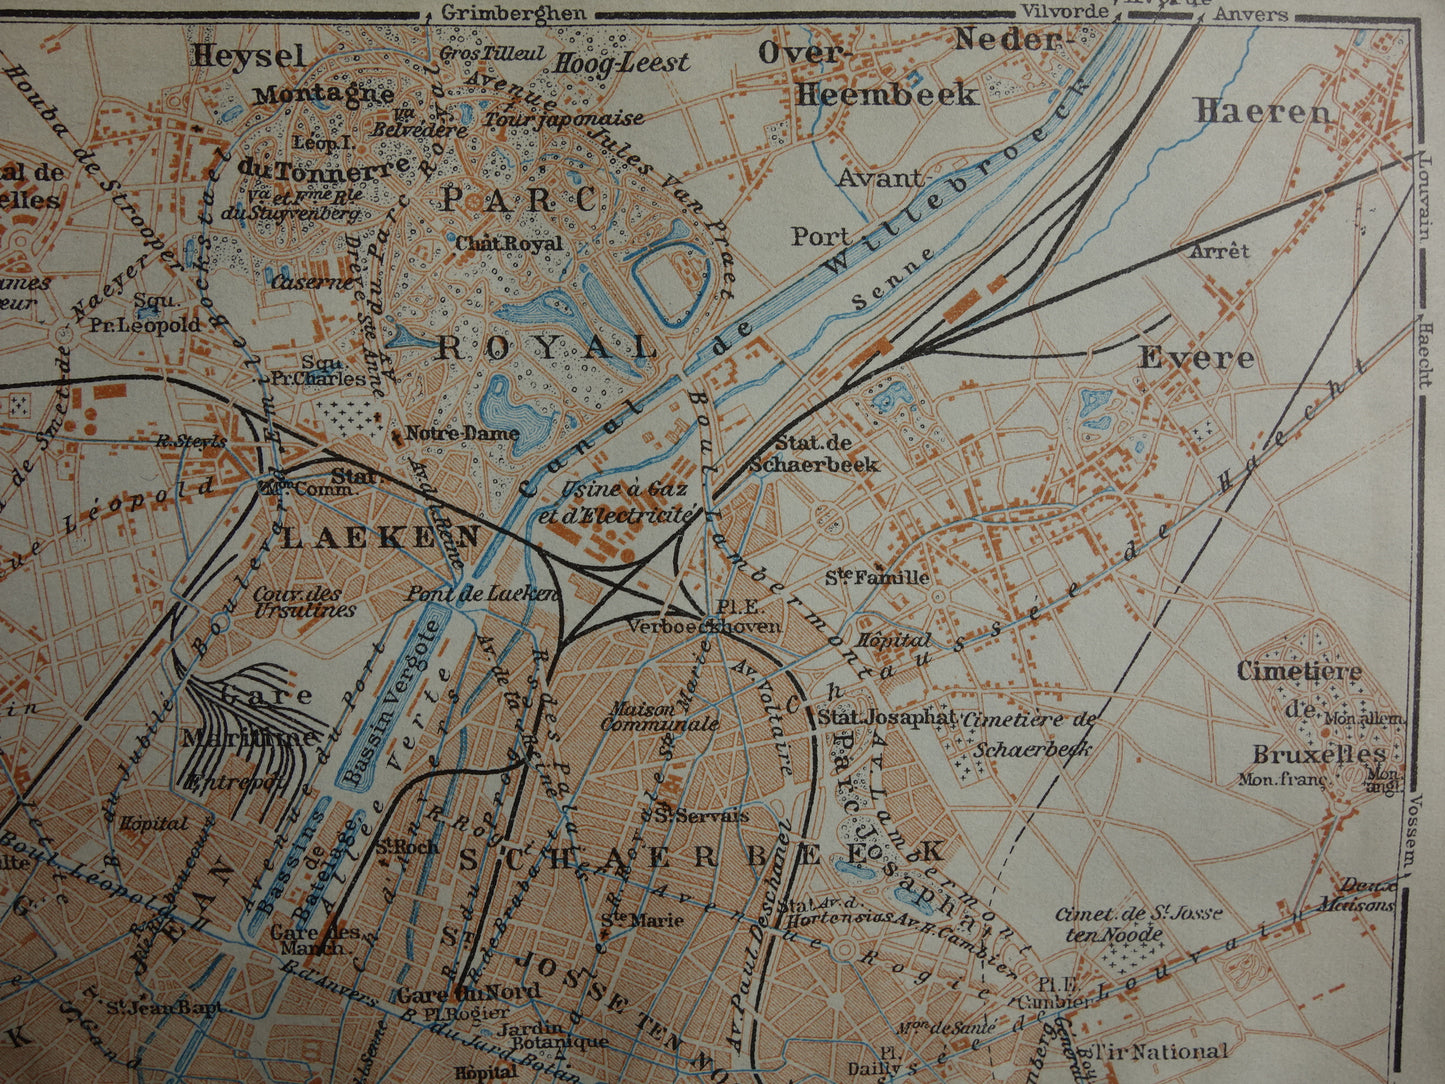 BRUSSEL oude kaart van Brussel België uit 1914 kleine originele antieke plattegrond Laeken Etterbeek landkaart